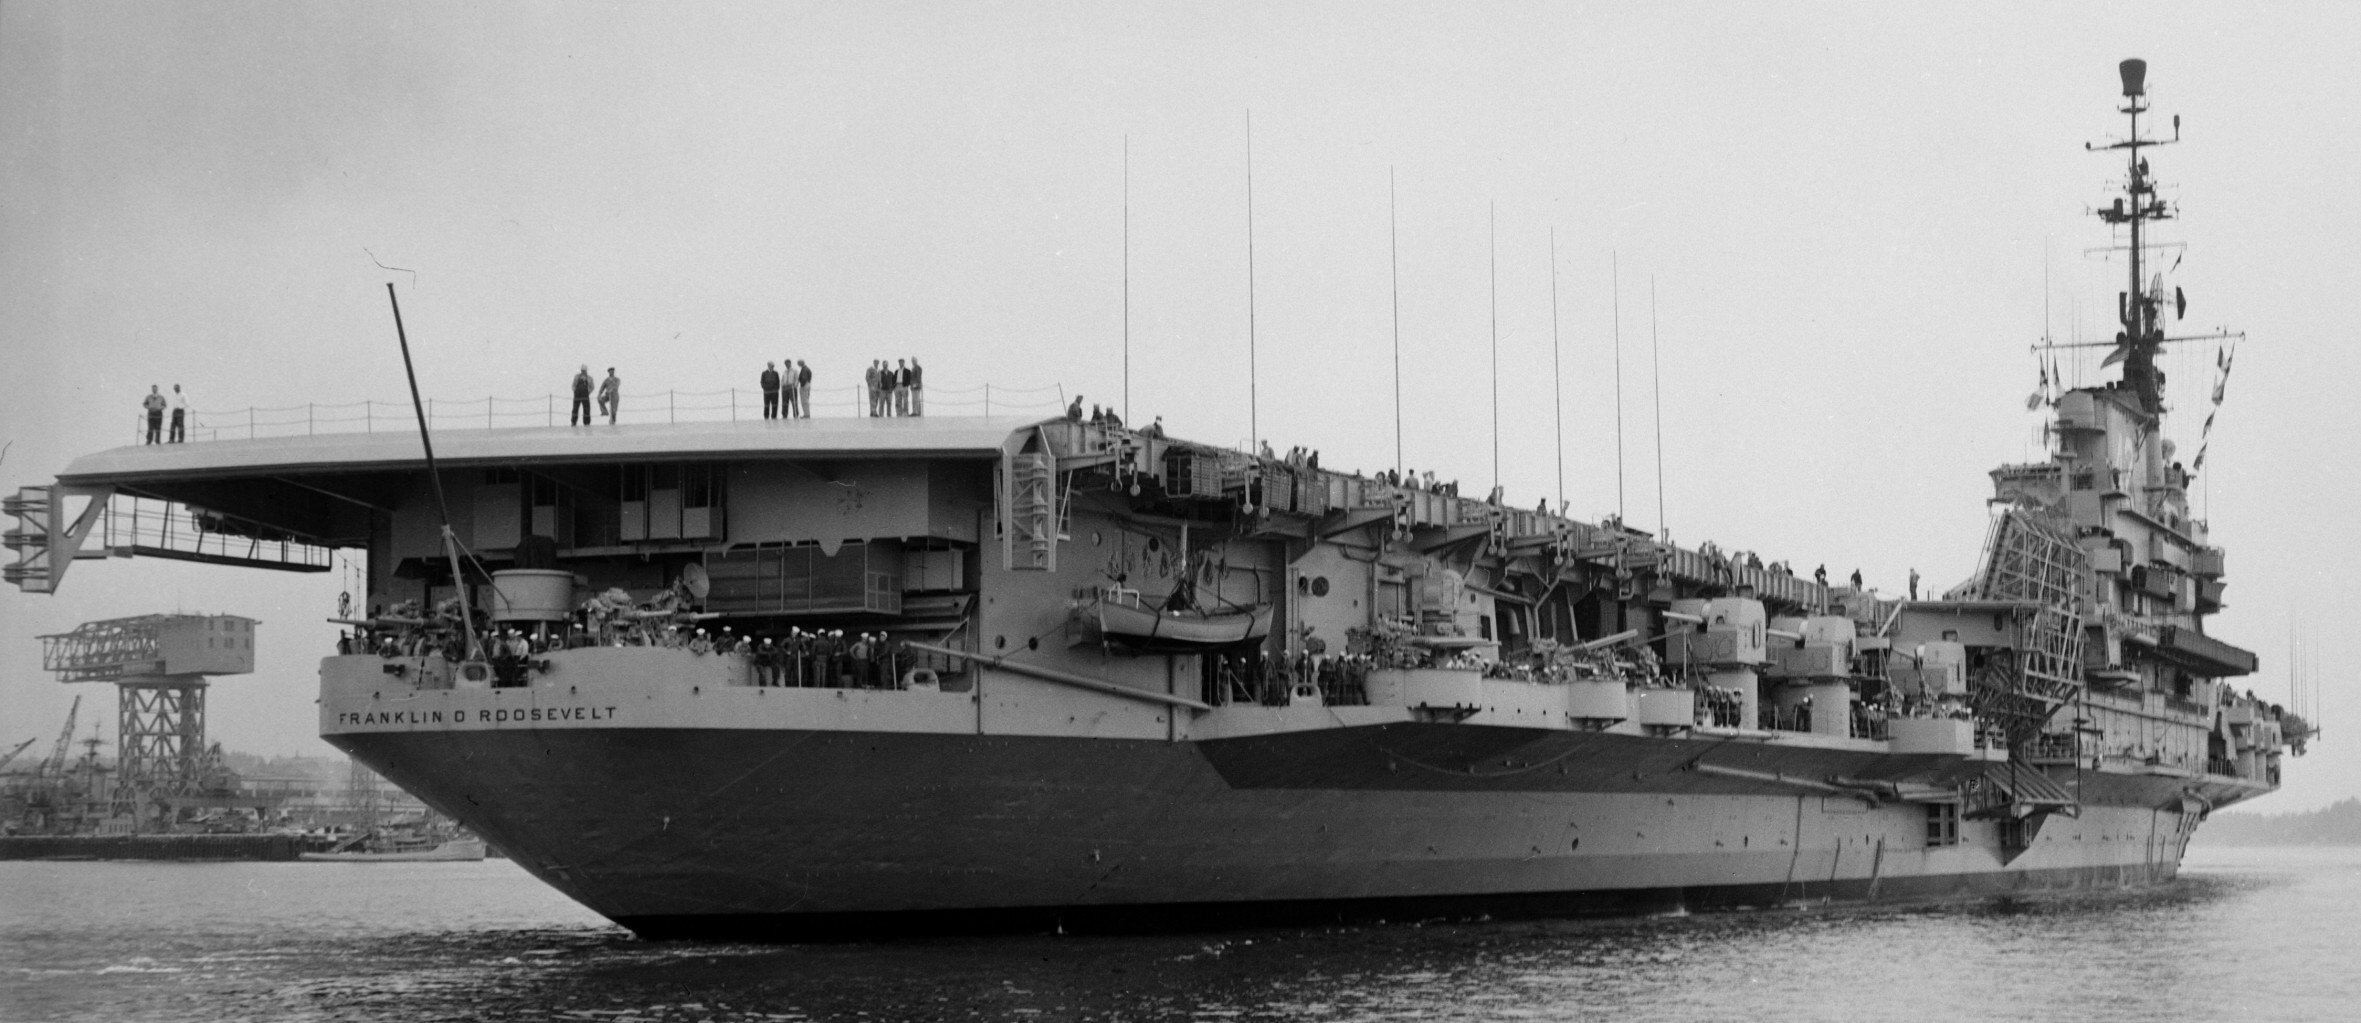 cva-42 uss franklin d. roosevelt midway class aircraft carrier 73 scb-110 conversion puget sound naval shipyard